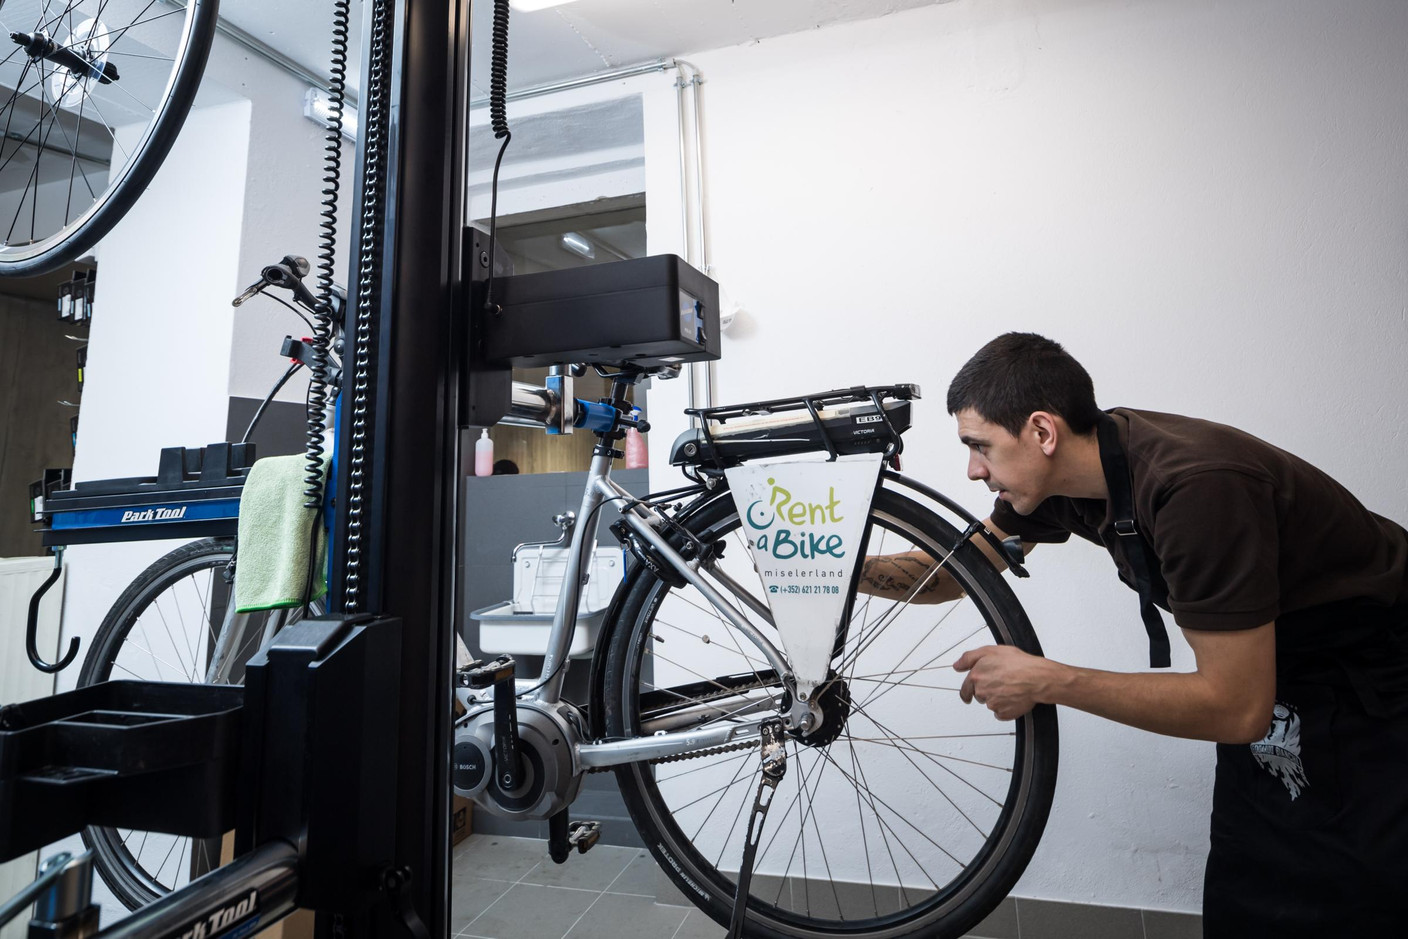 Une partie des réparations effectuées sur place concerne aussi des sociétés de location de vélos. (Photo: Nader Ghavami)